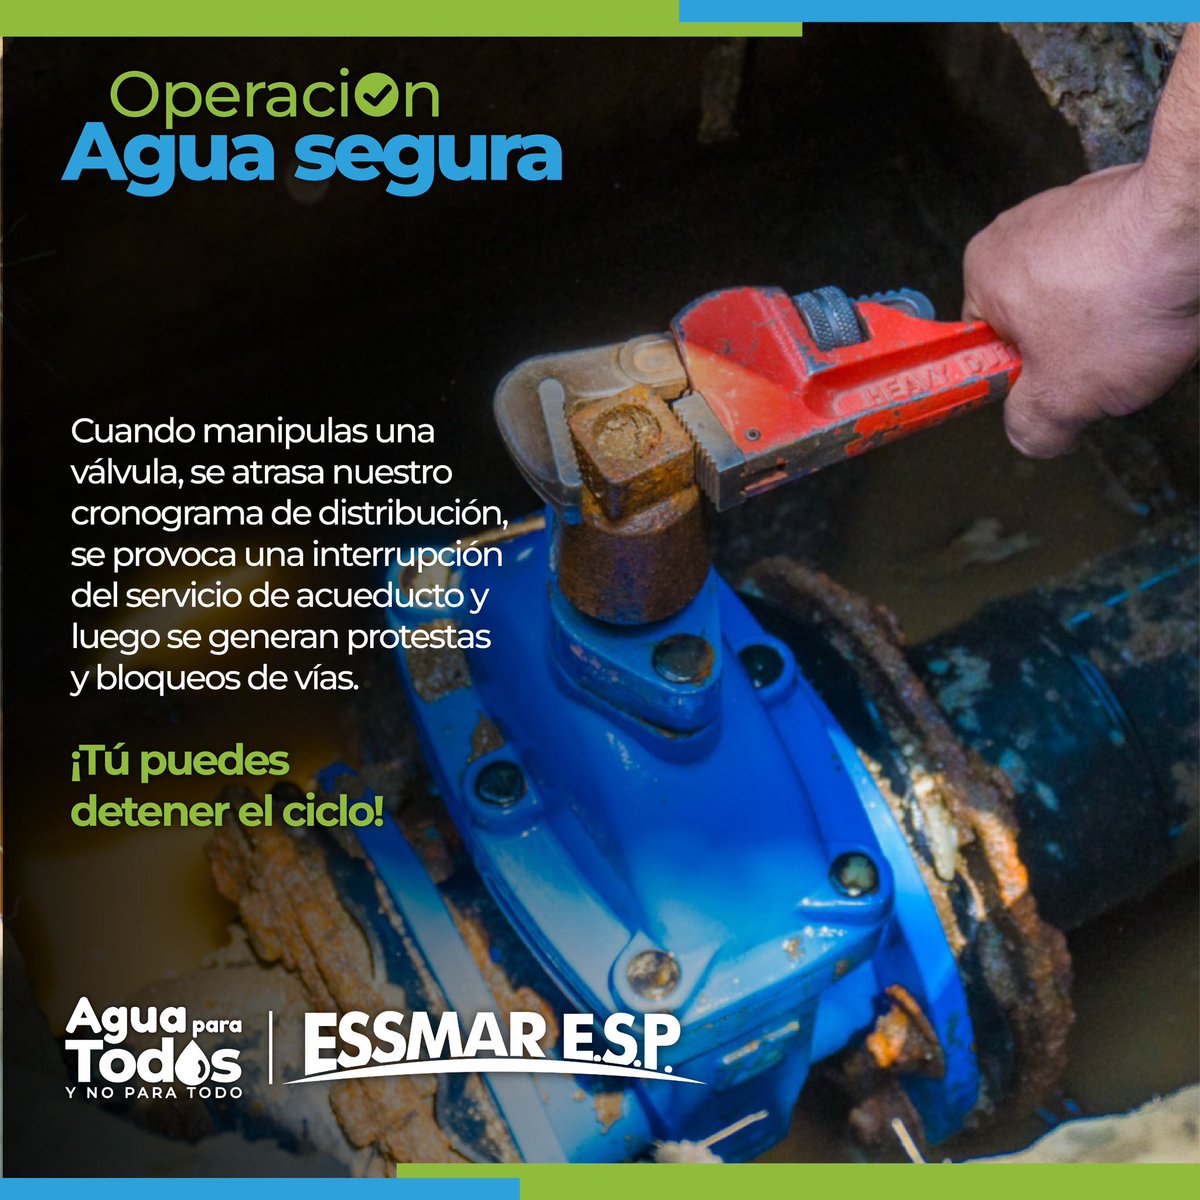 En esta temporada de verano ☀️necesitamos unirnos para lograr tener #AguaParaTodos. Tu puedes detener este ciclo que empieza con la manipulación de válvulas 🔧desde tu barrio únete a la operación #AguaSegura 🔒💦.